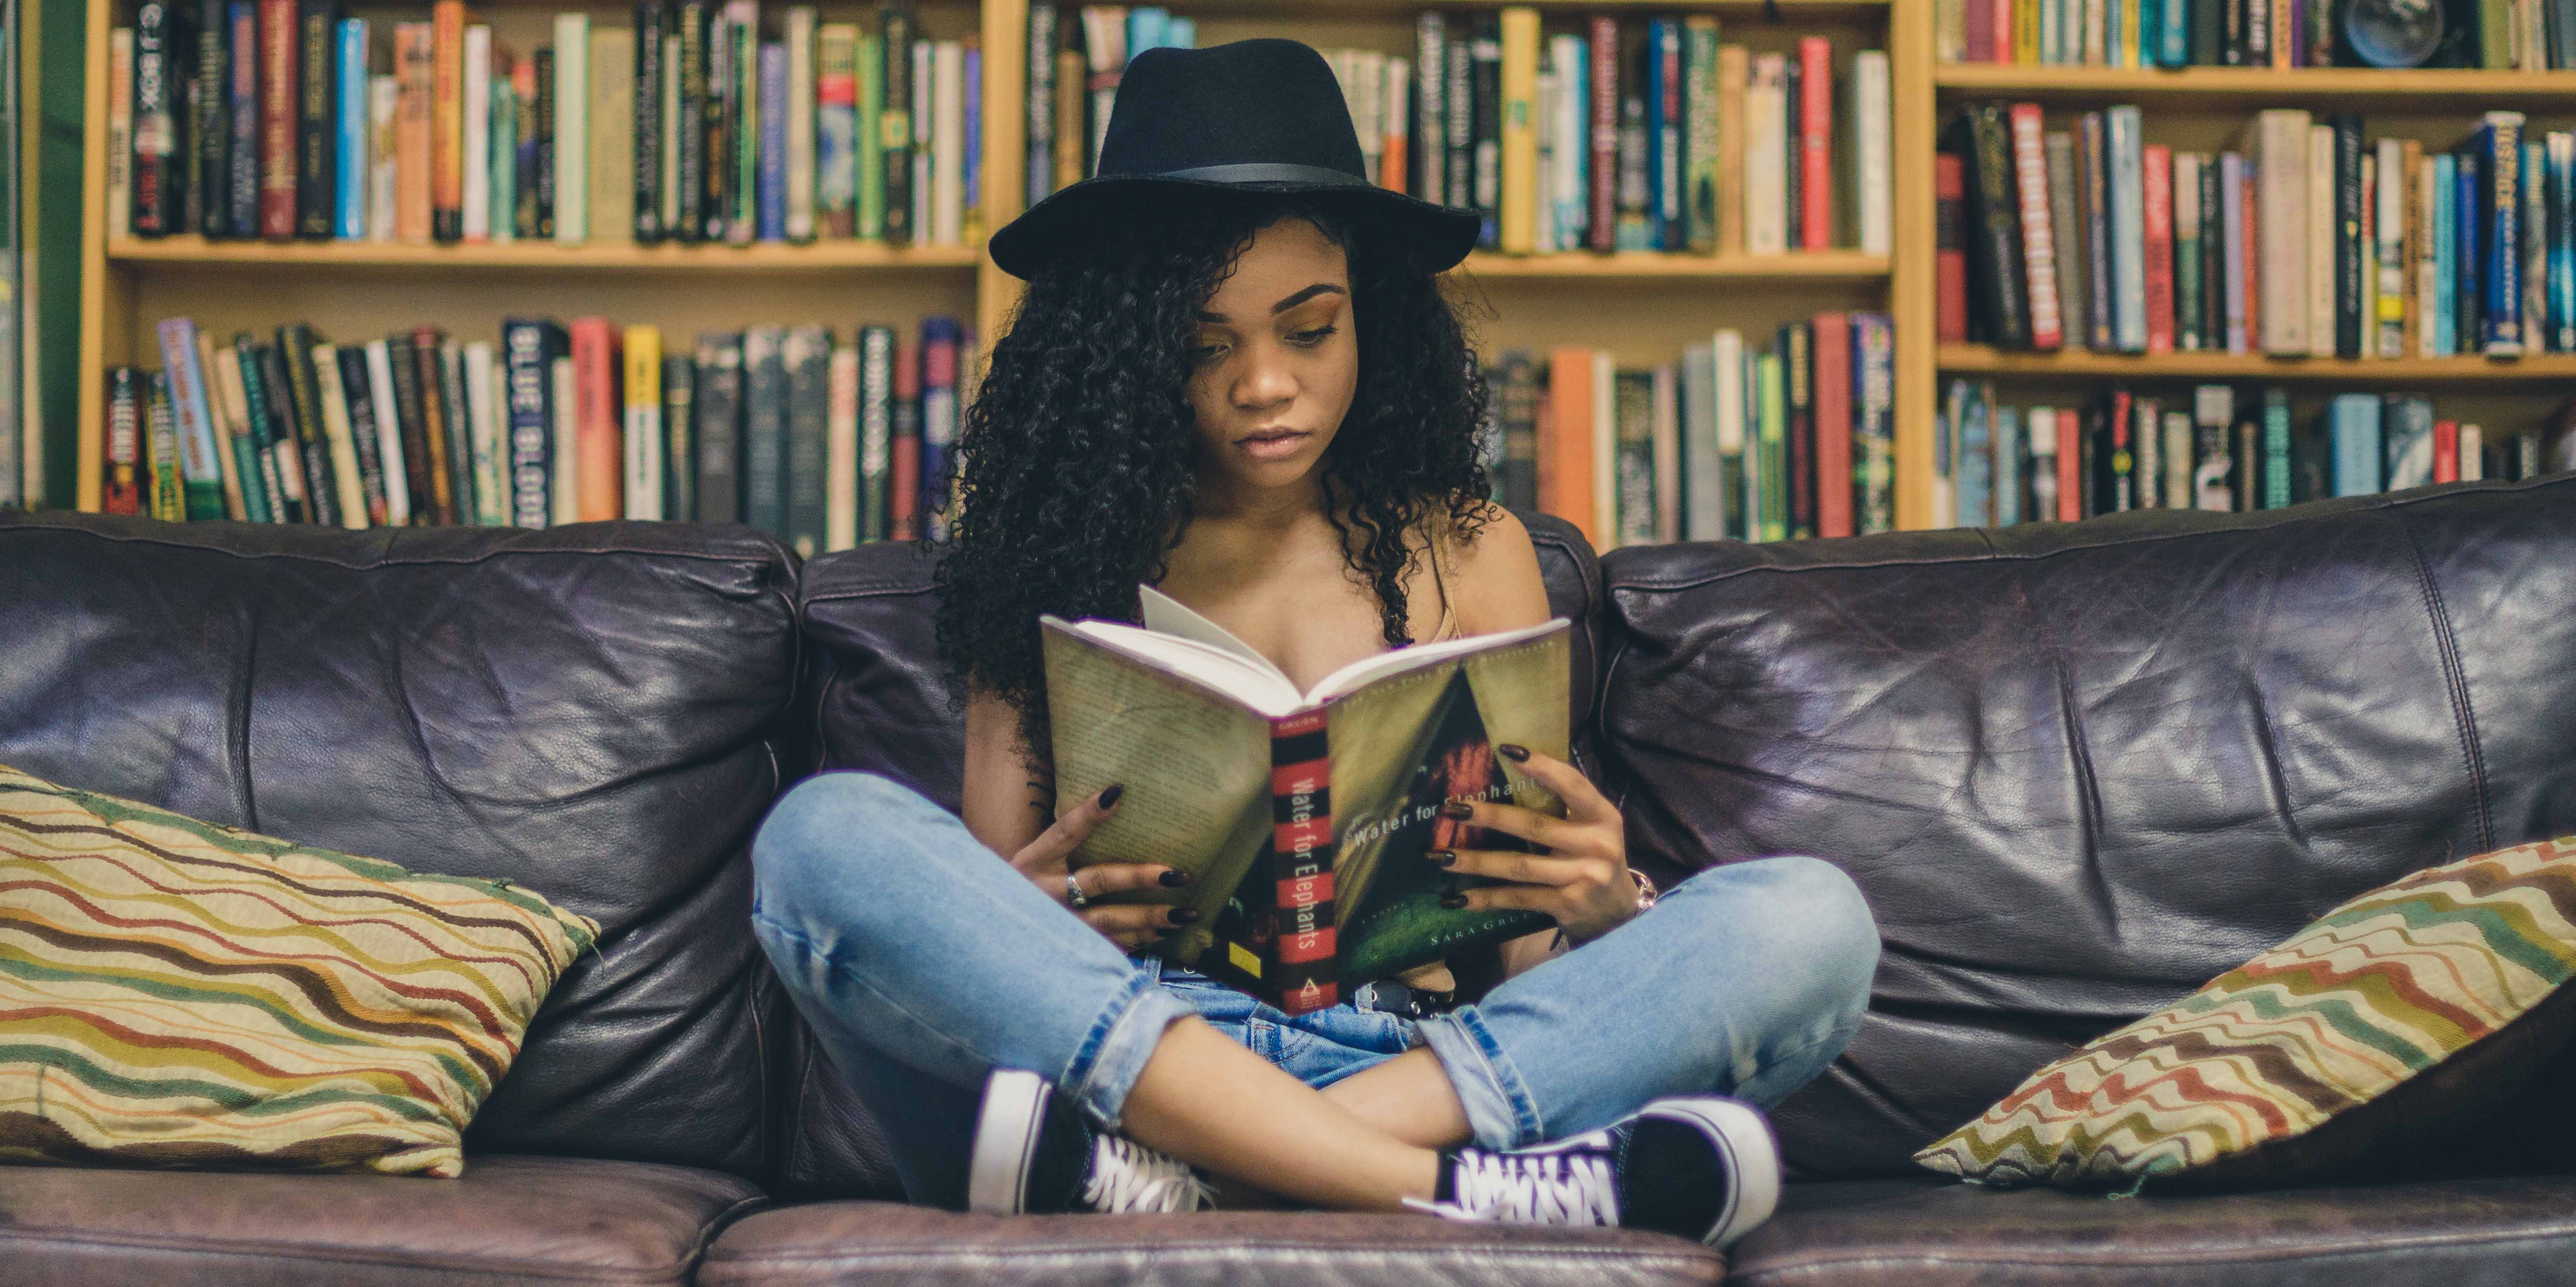 Jovem negra com chapéu preto sentada em um sofa, lendo um livro